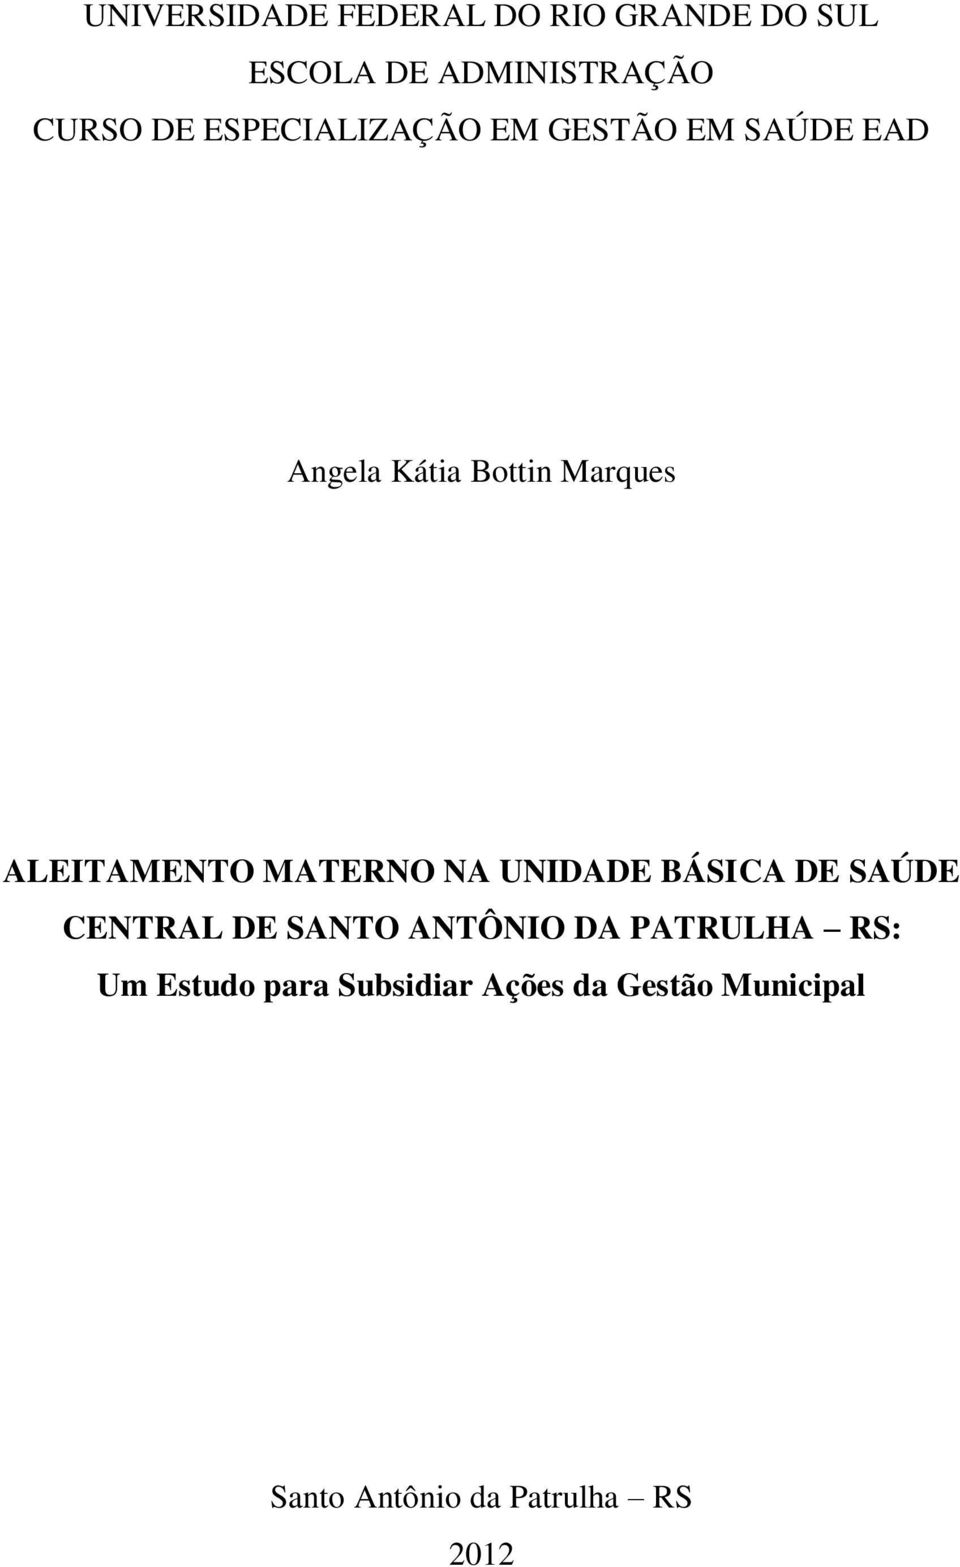 MATERNO NA UNIDADE BÁSICA DE SAÚDE CENTRAL DE SANTO ANTÔNIO DA PATRULHA RS: Um